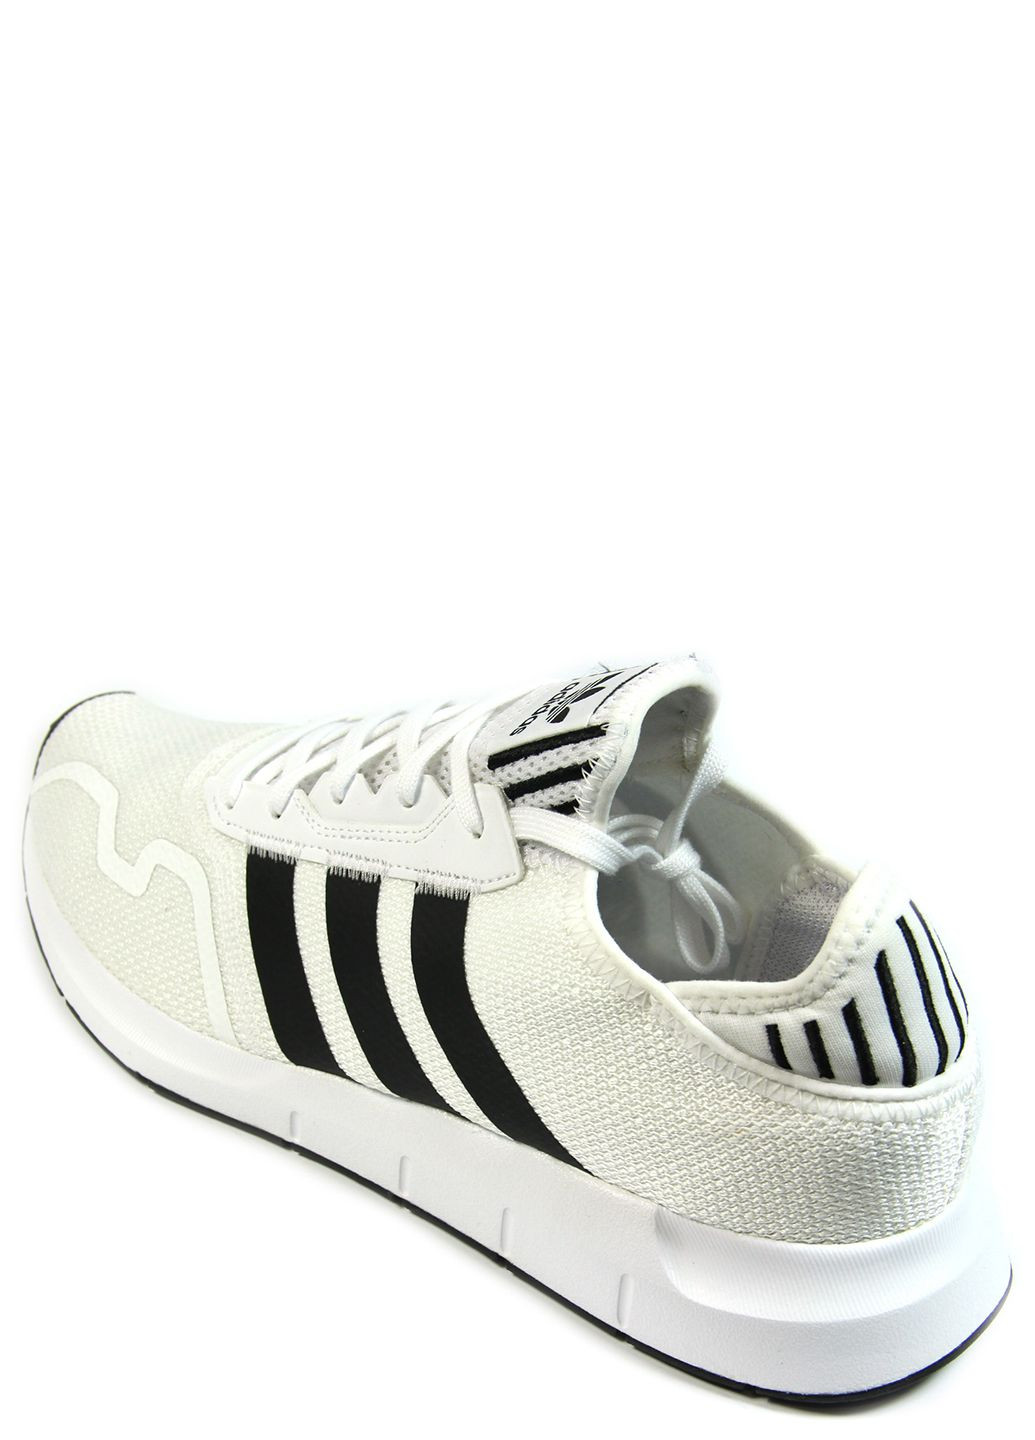 Белые демисезонные мужские кроссовки swift run x fy2111 adidas